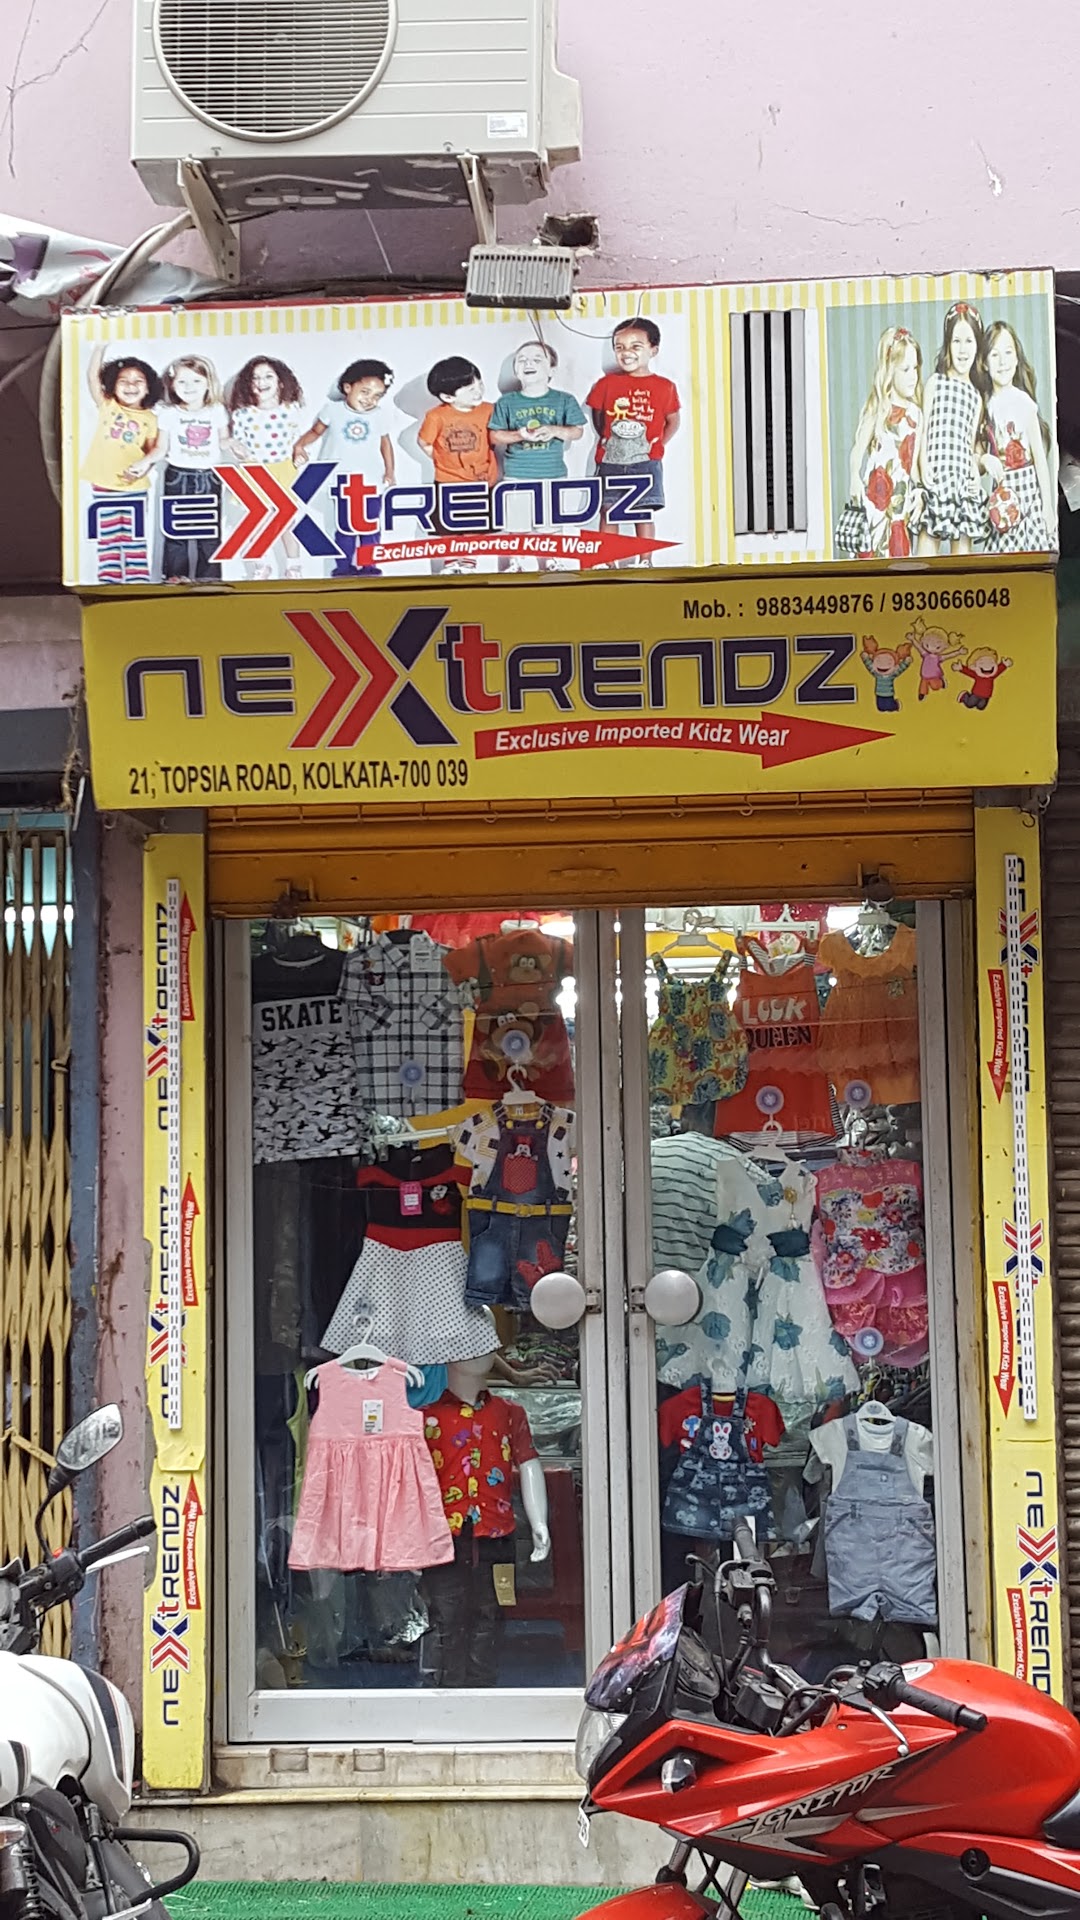 Nexttrendz Imported kidz wear